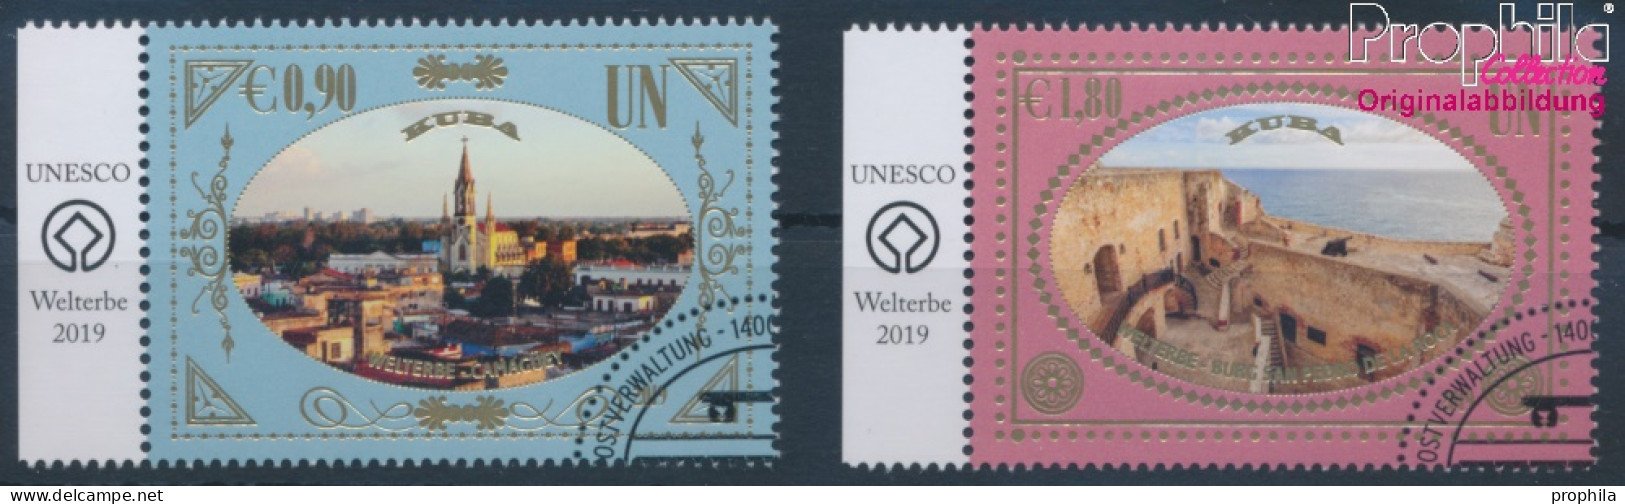 UNO - Wien 1070-1071 (kompl.Ausg.) Gestempelt 2019 UNESCO Welterbe Kuba (10357225 - Oblitérés